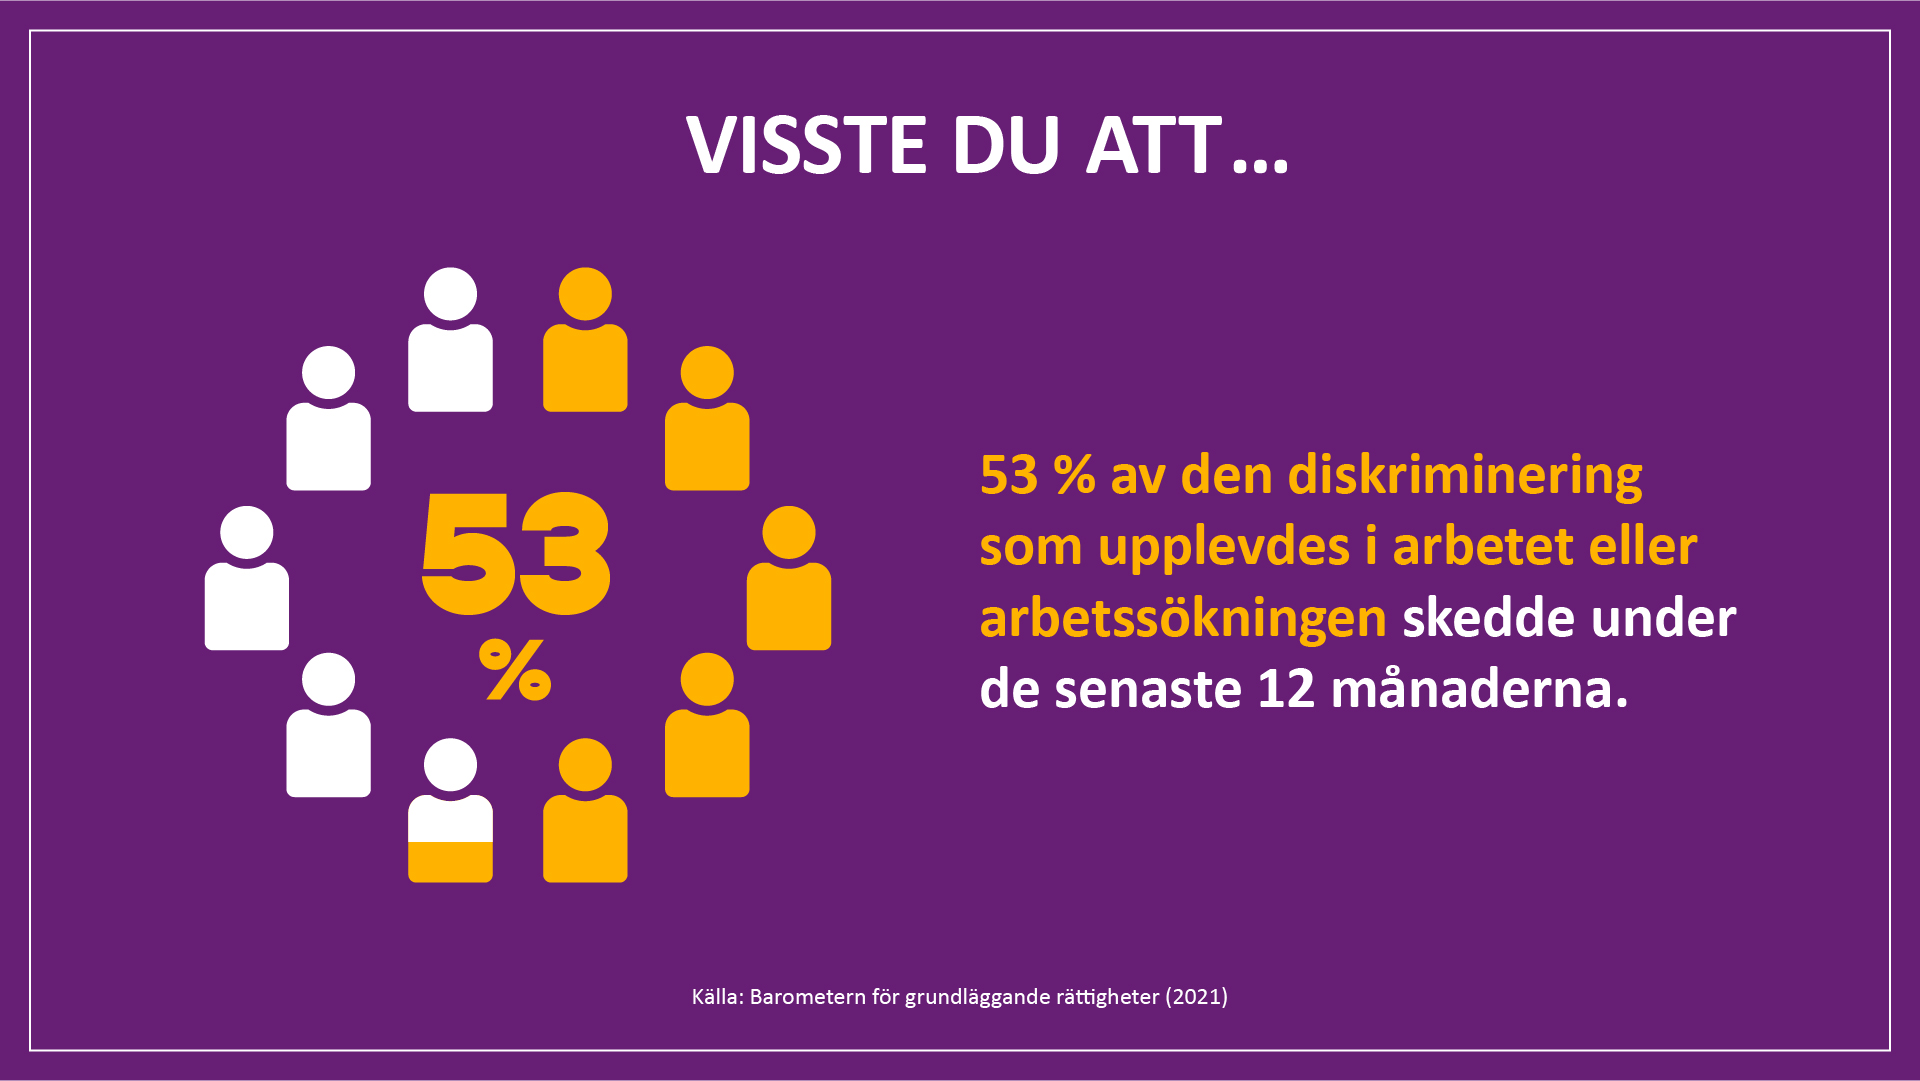 Visste du att 53 % av den diskriminering som upplevdes i arbetet eller arbetssökningen skedde under de senaste 12 månaderna. Källa: Barometern för grundläggande rättigheter (2021).